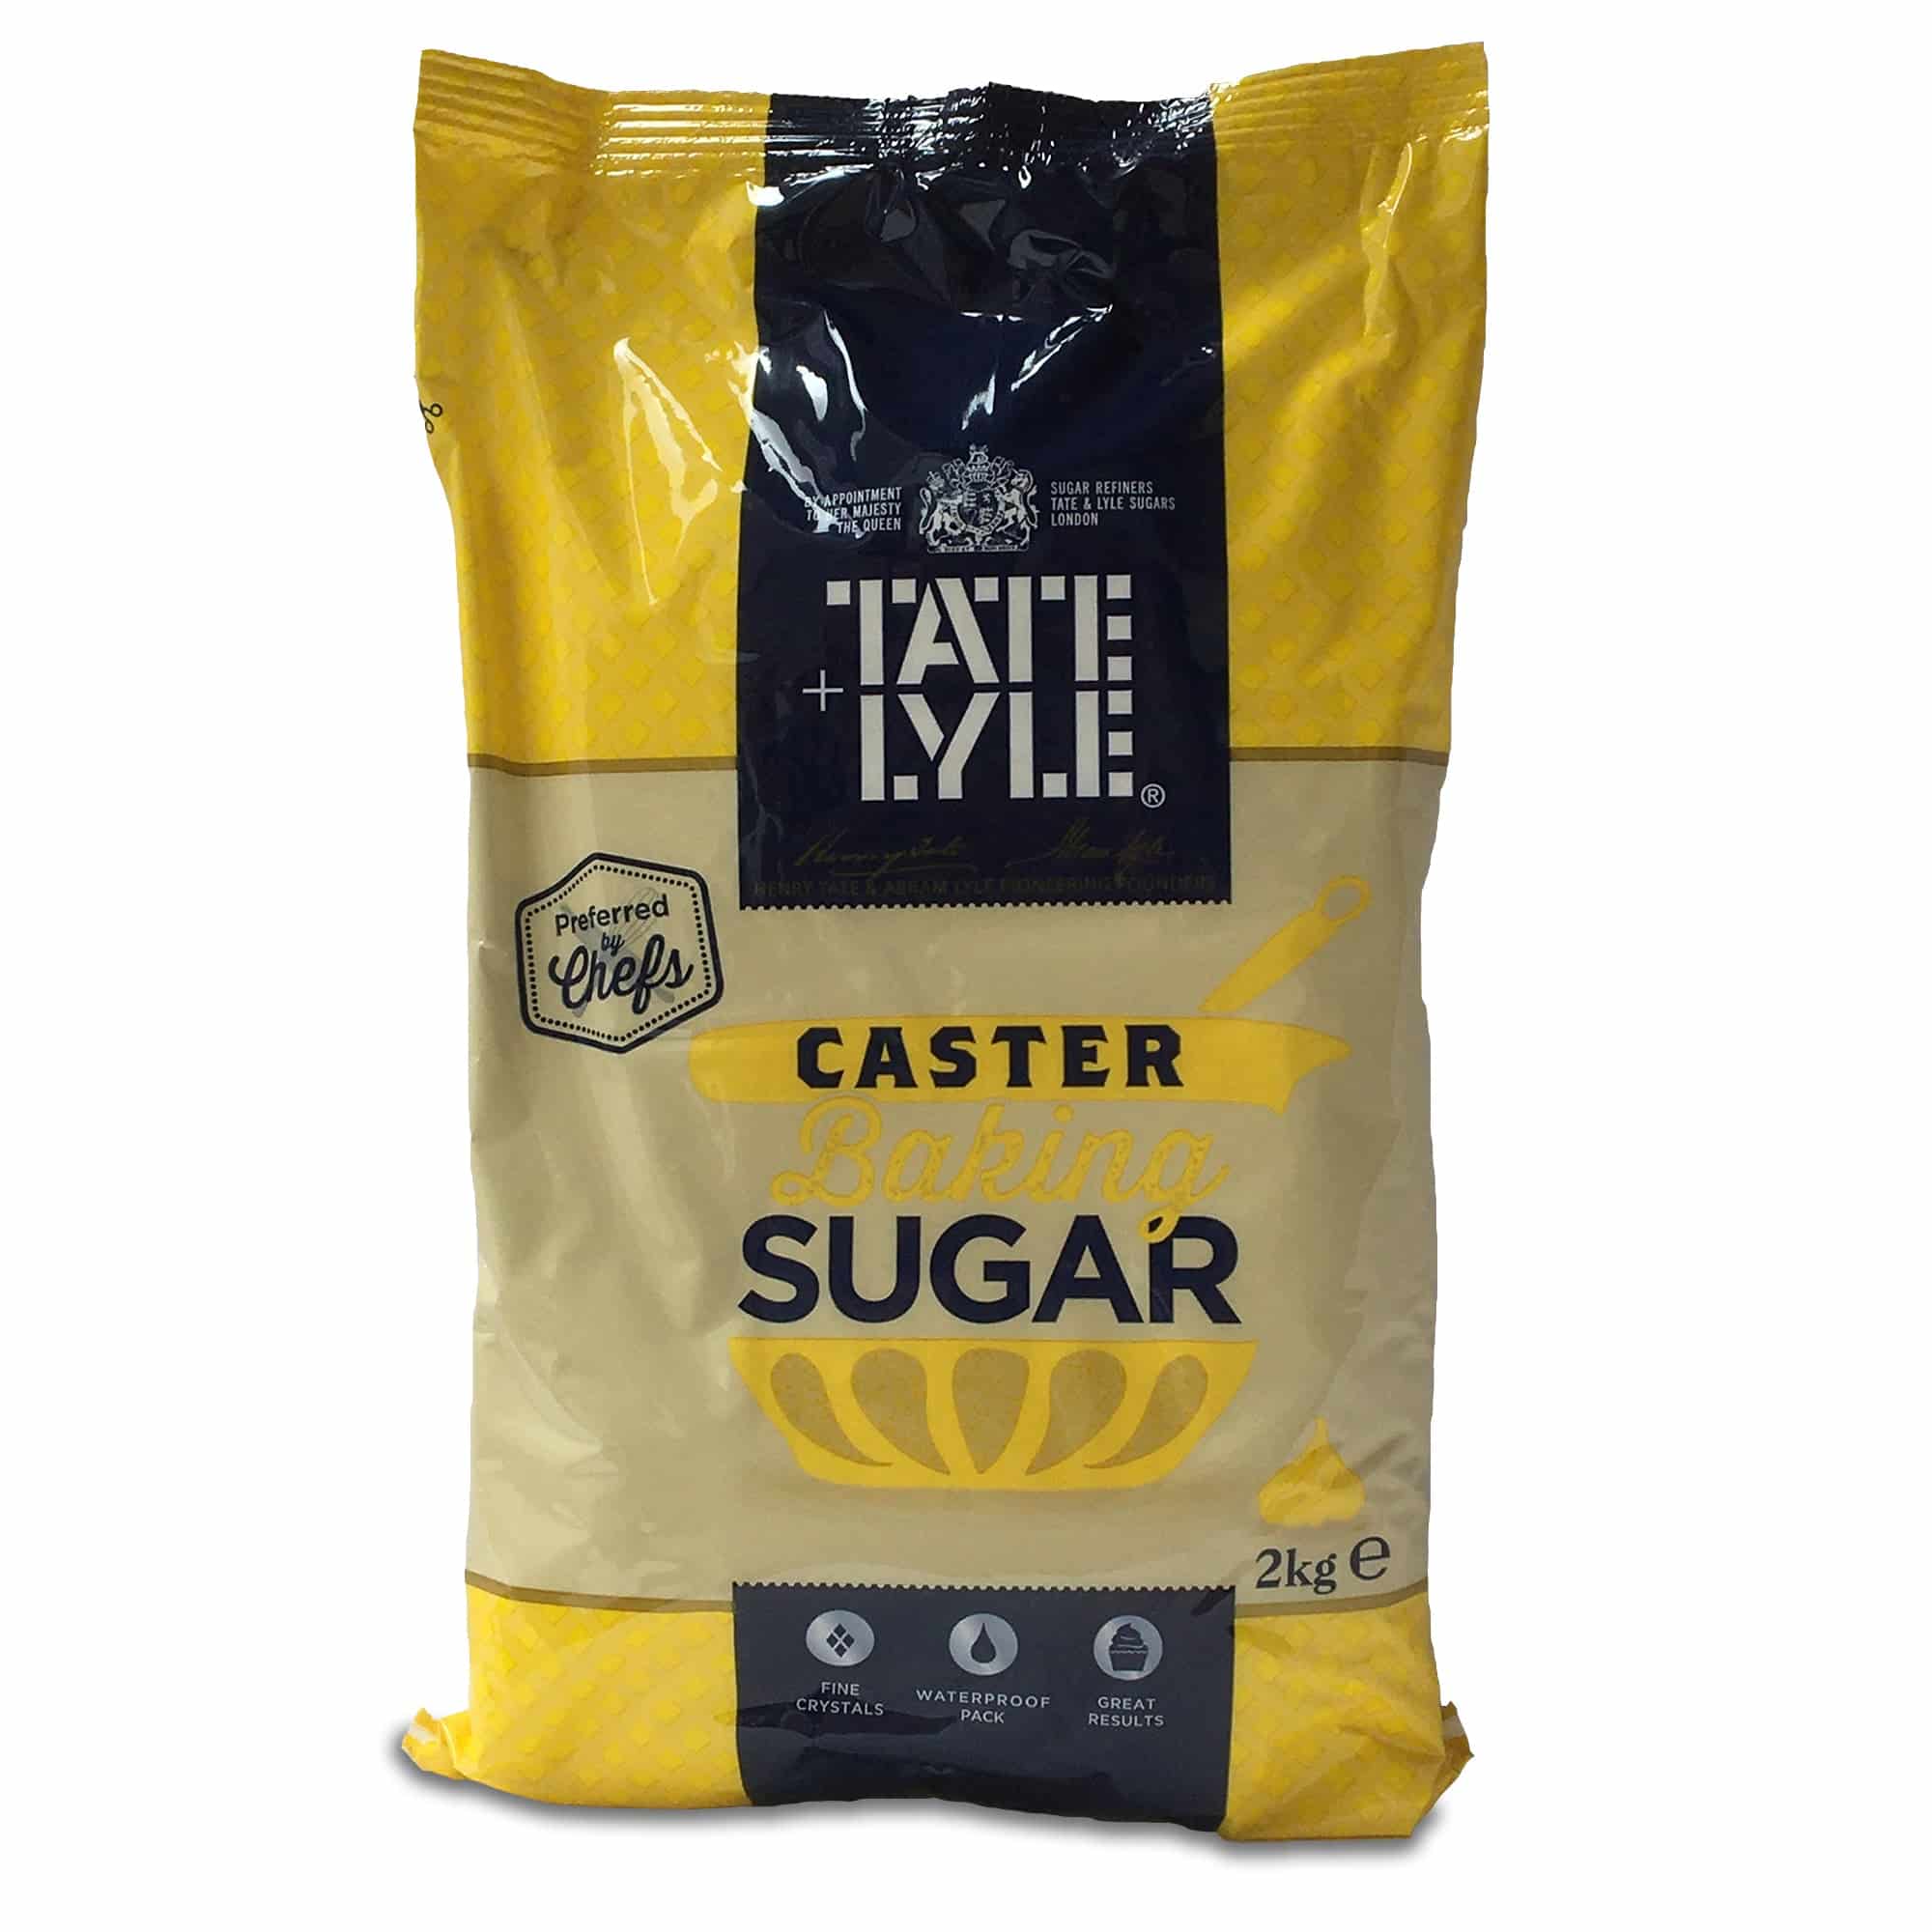 Caster Sugar, 2kg